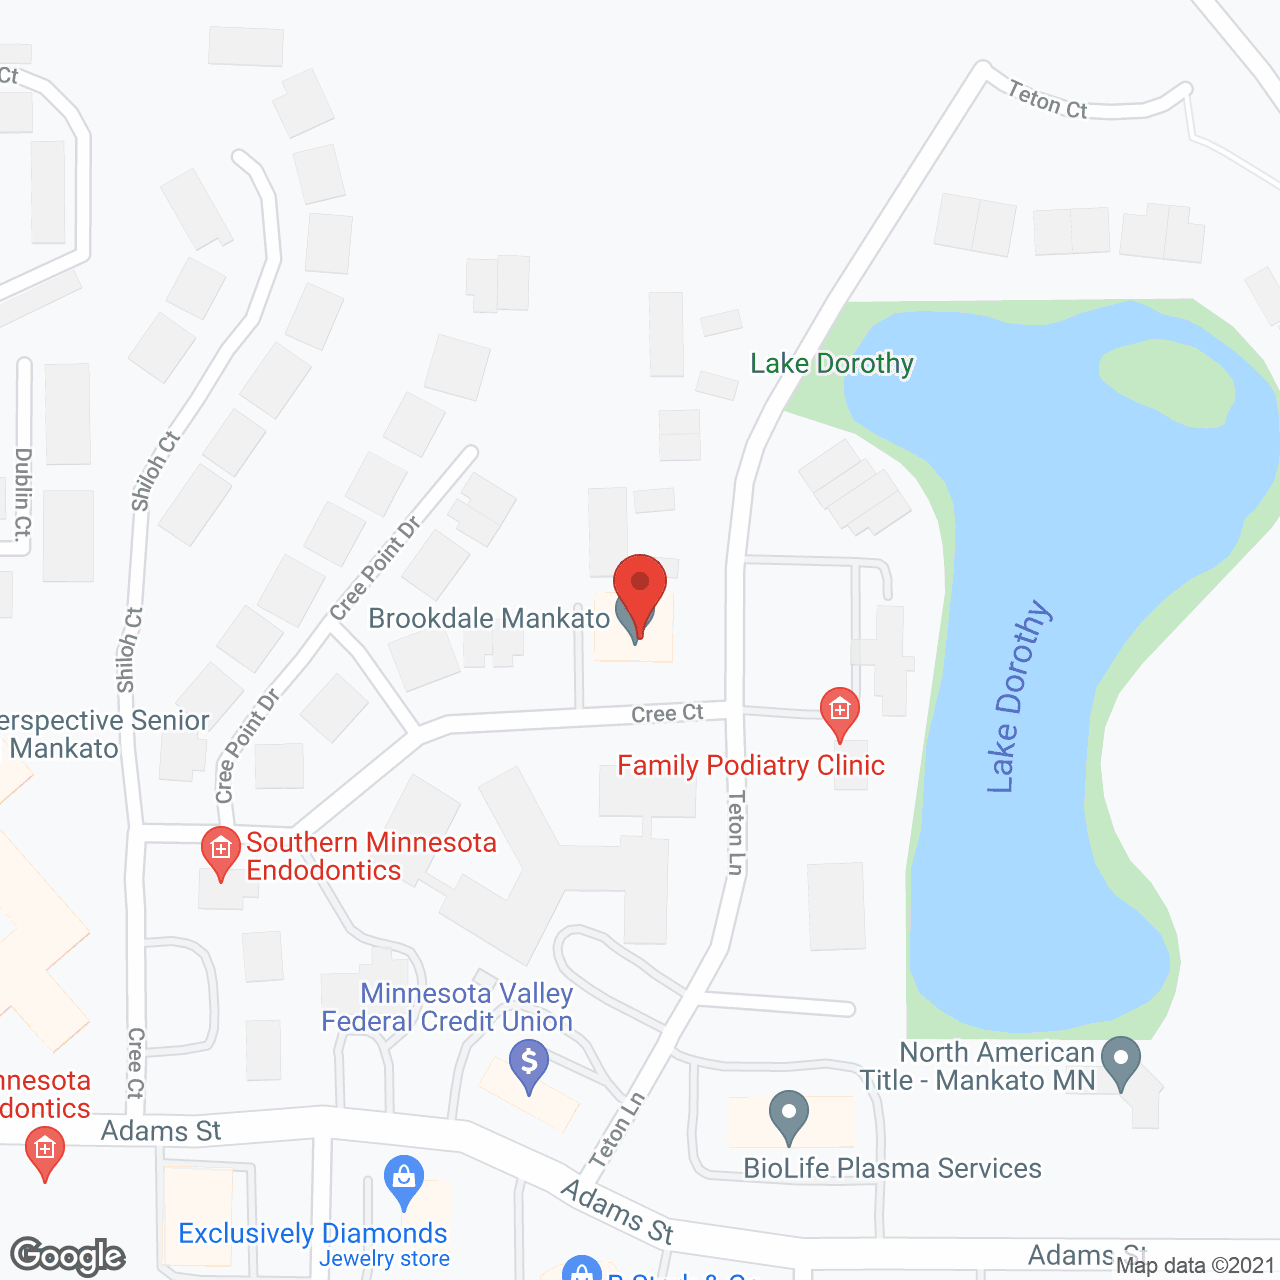 Brookdale Mankato in google map